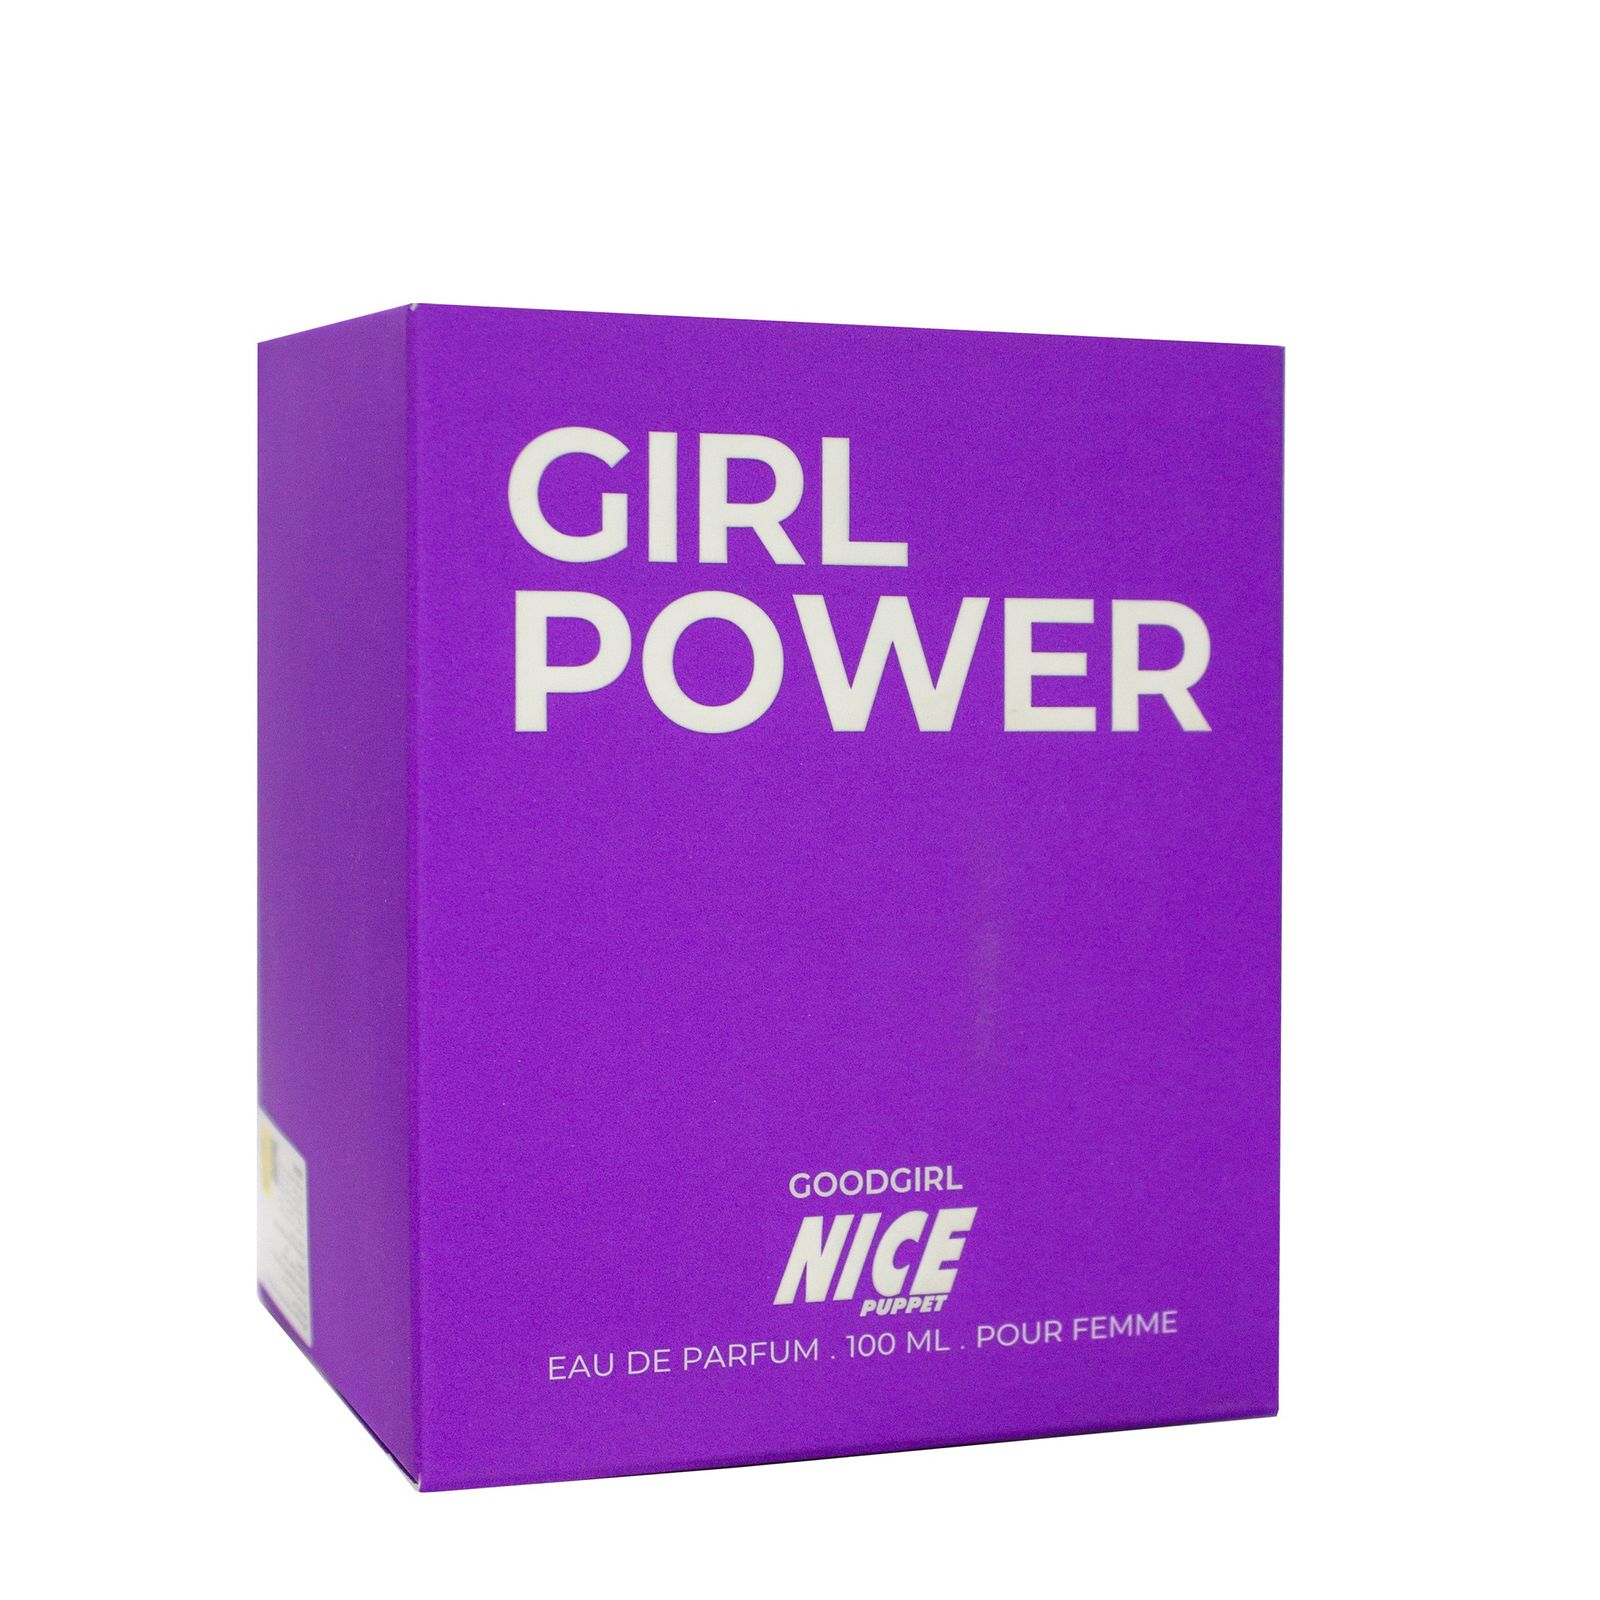 ادوپرفیوم زنانه نایس پاپت مدل Good Girl Power حجم 100 میلی لیتر -  - 2